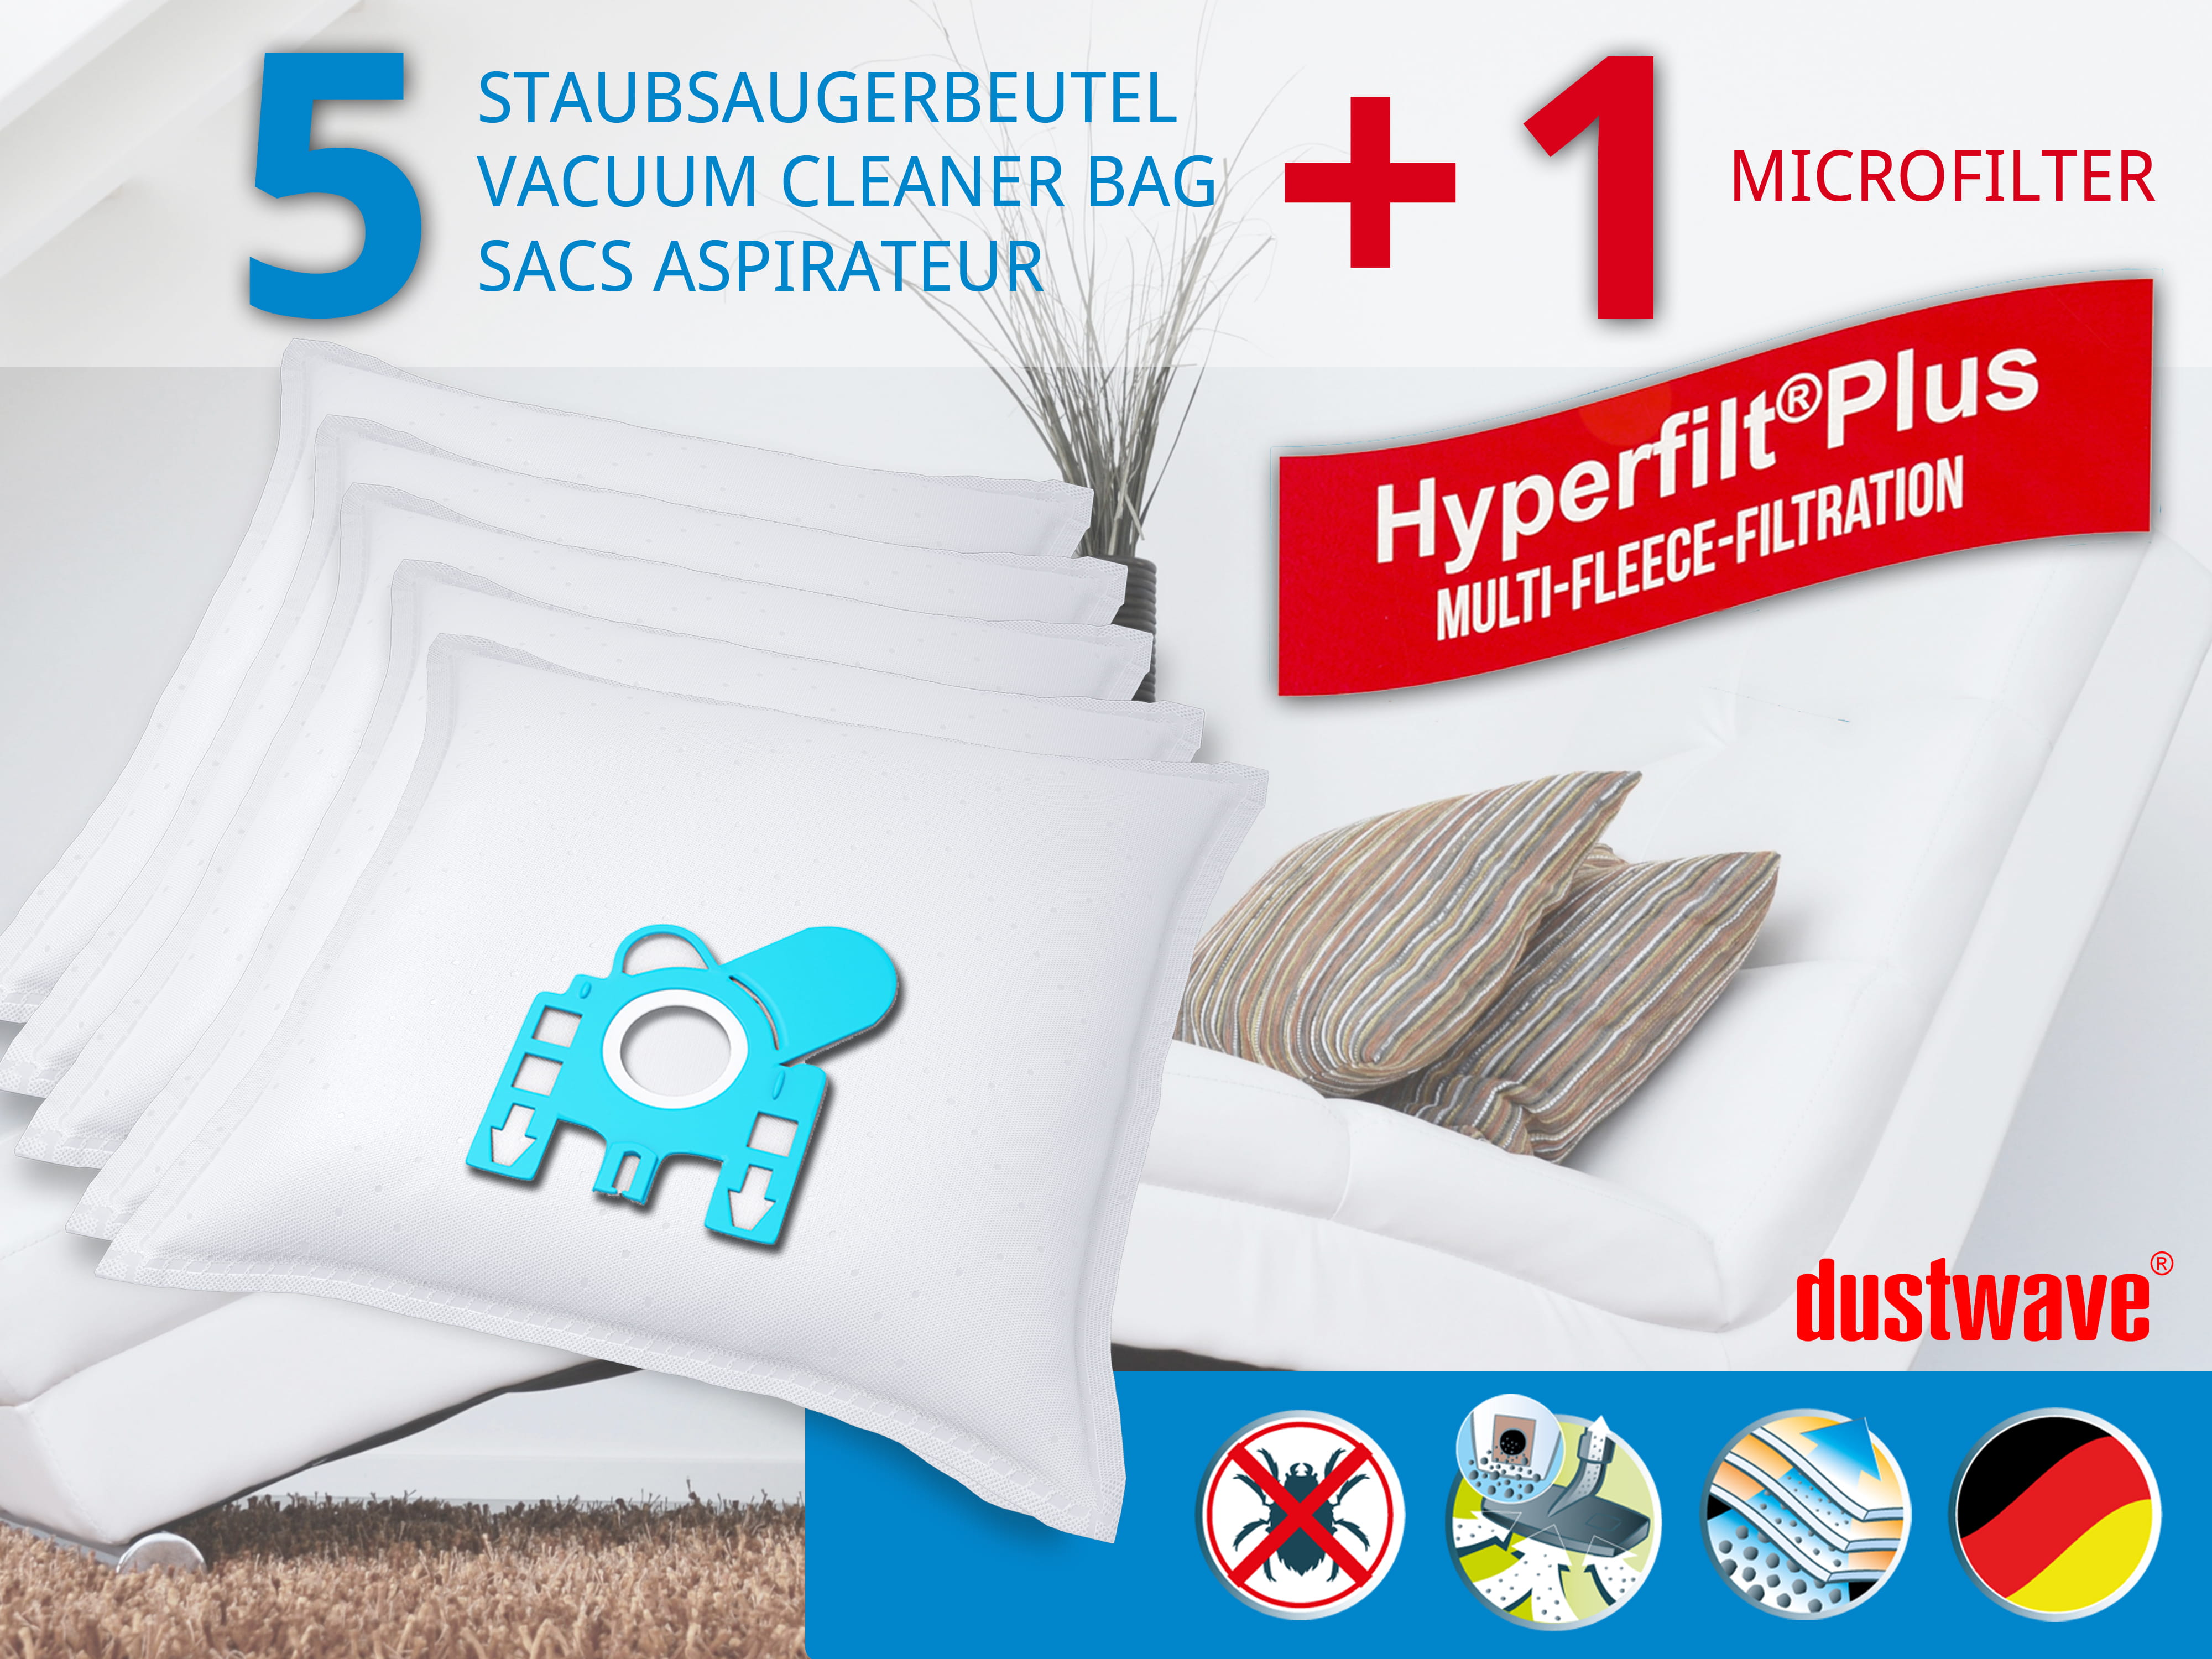 Dustwave® 5 Staubsaugerbeutel für Miele S6330 / S 6330 - hocheffizient, mehrlagiges Mikrovlies mit Hygieneverschluss - Made in Germany